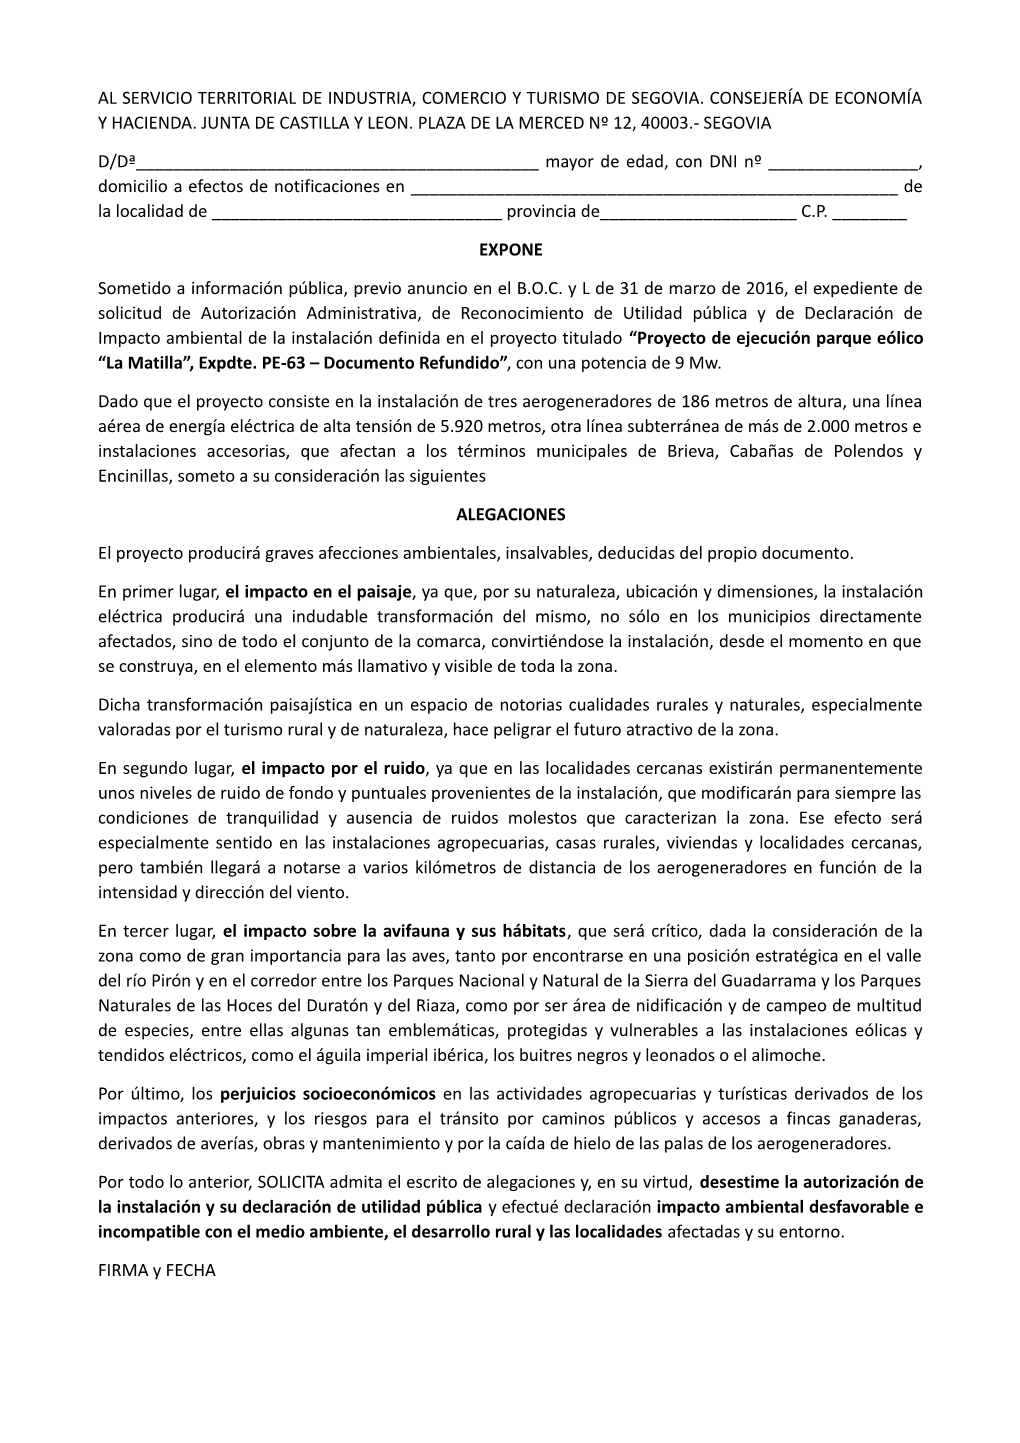 Al Servicio Territorial De Industria, Comercio Y Turismo De Segovia. Consejería De Economía Y Hacienda. Junta De Castilla Y Leon